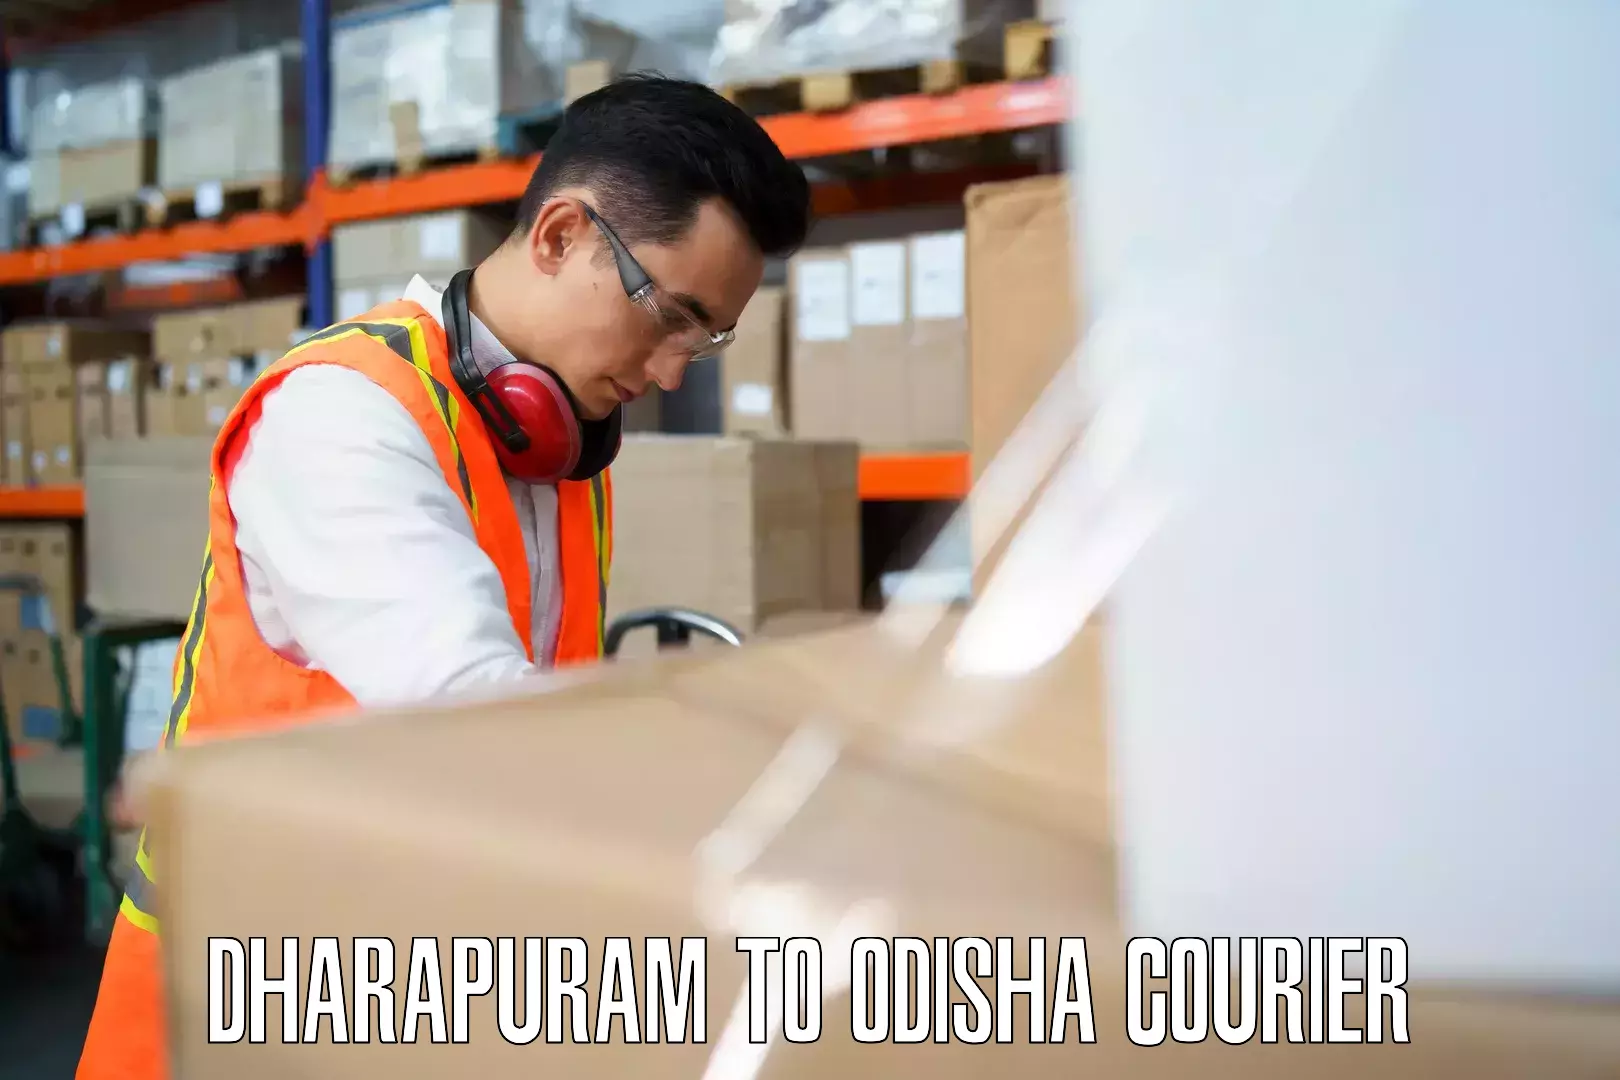 Comprehensive baggage service Dharapuram to Raruan